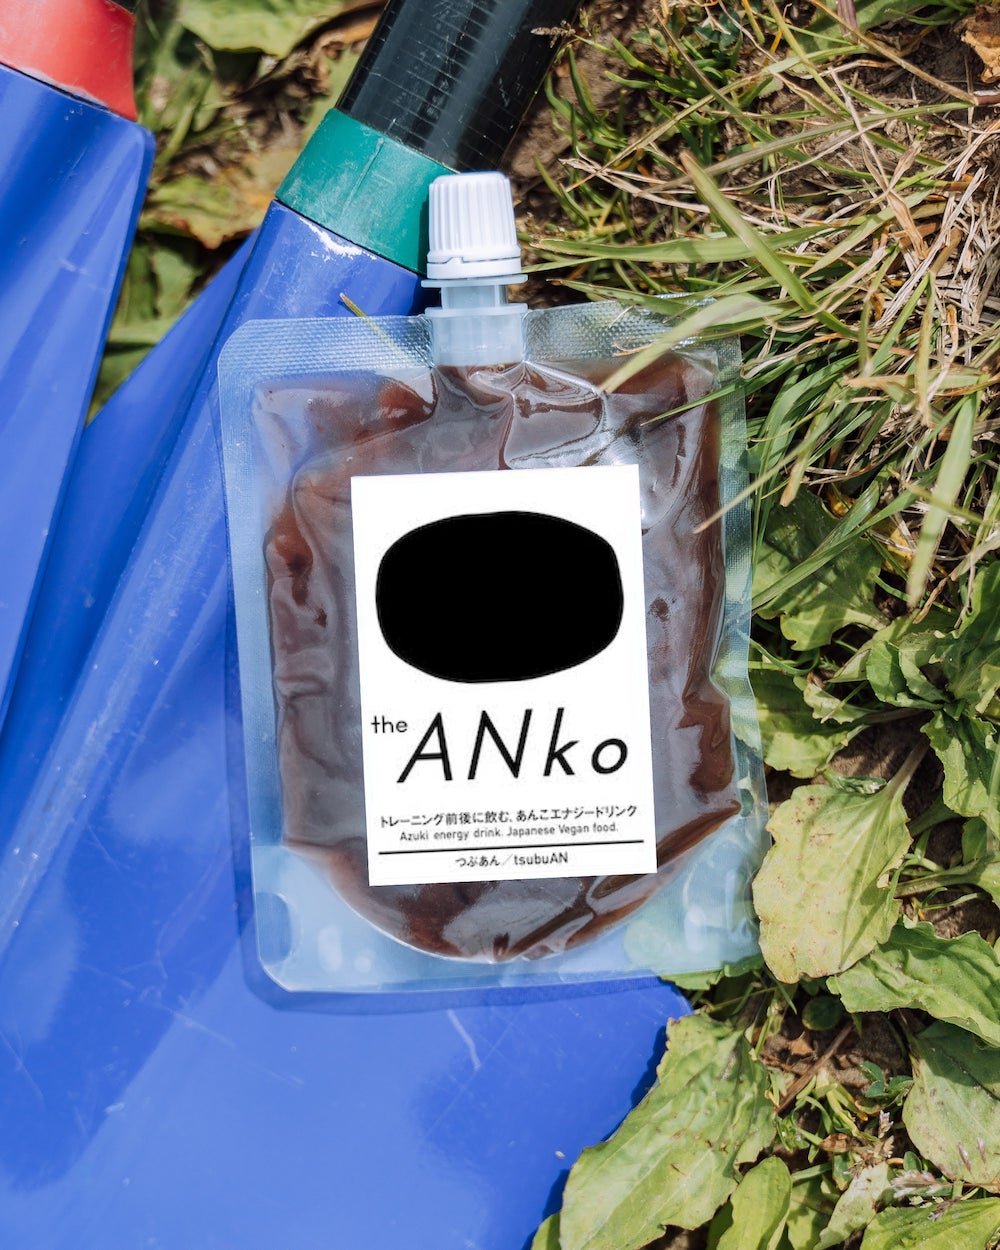 日本スタンドアップパドルボード協会（SUPA）の公式パワーフードに「飲むあんこ・theANko」が採用されました。のサブ画像4